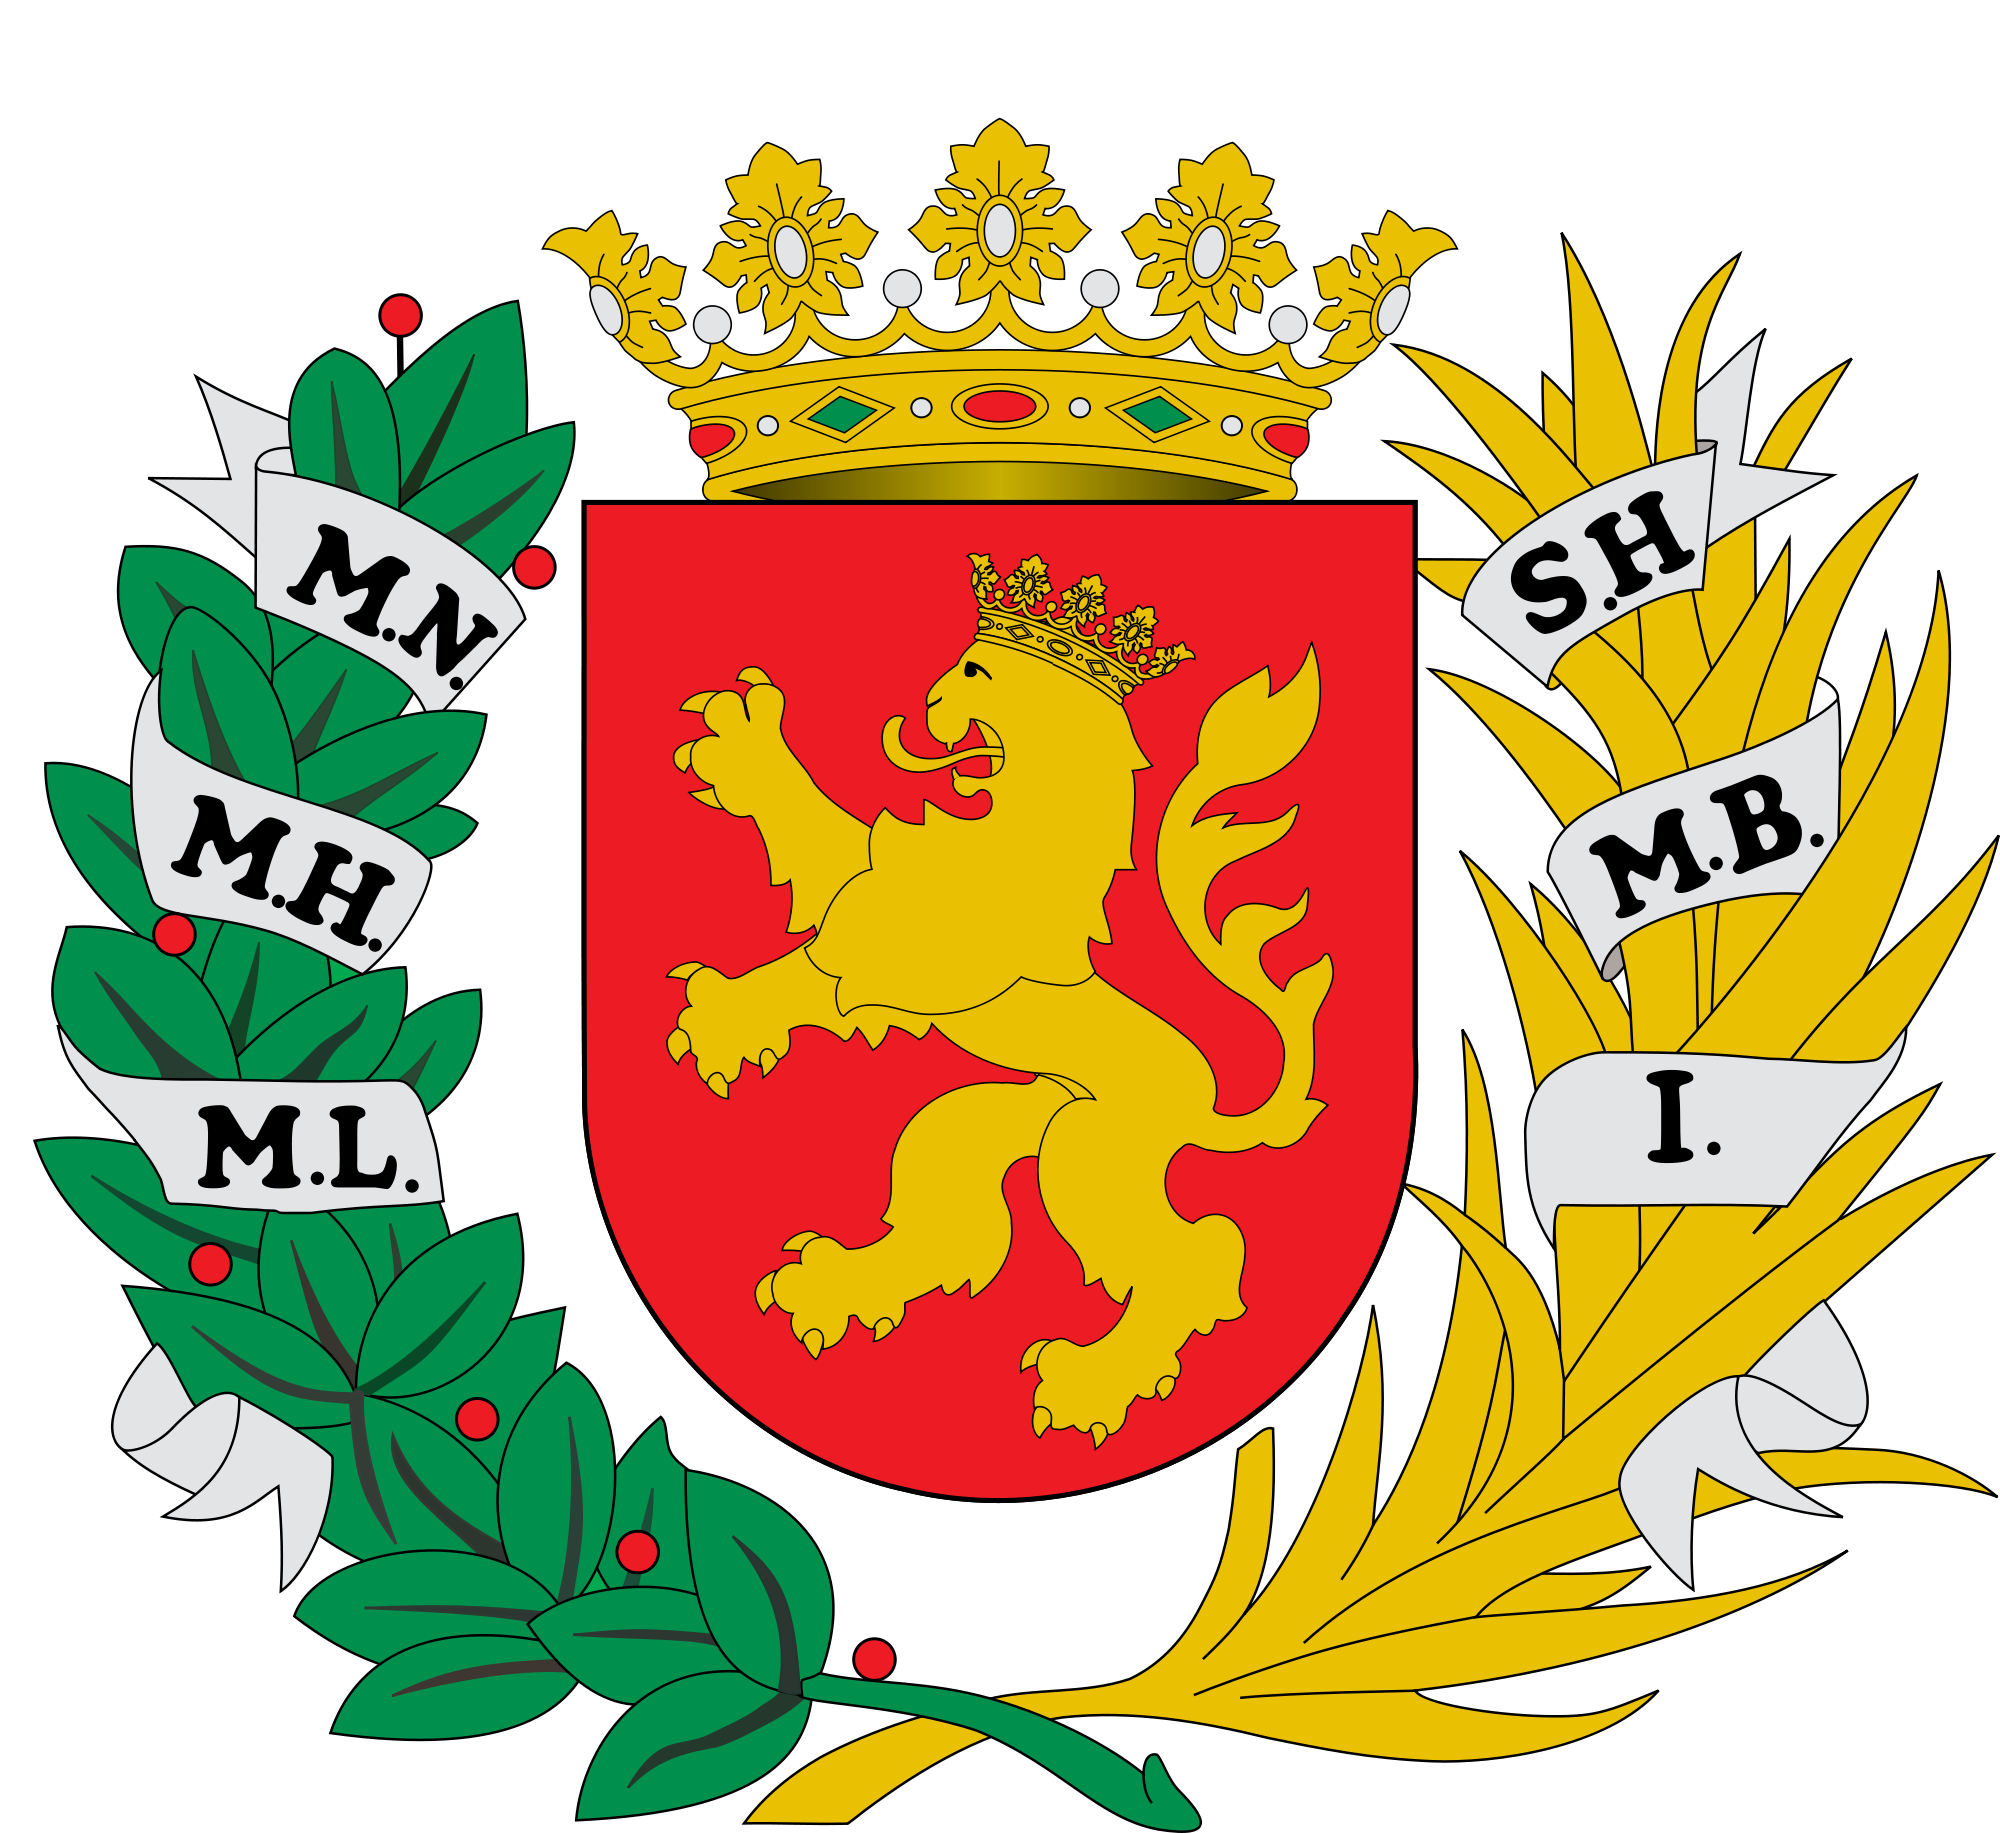 Los títulos de la ciudad de Zaragoza están inscritos en el escudo